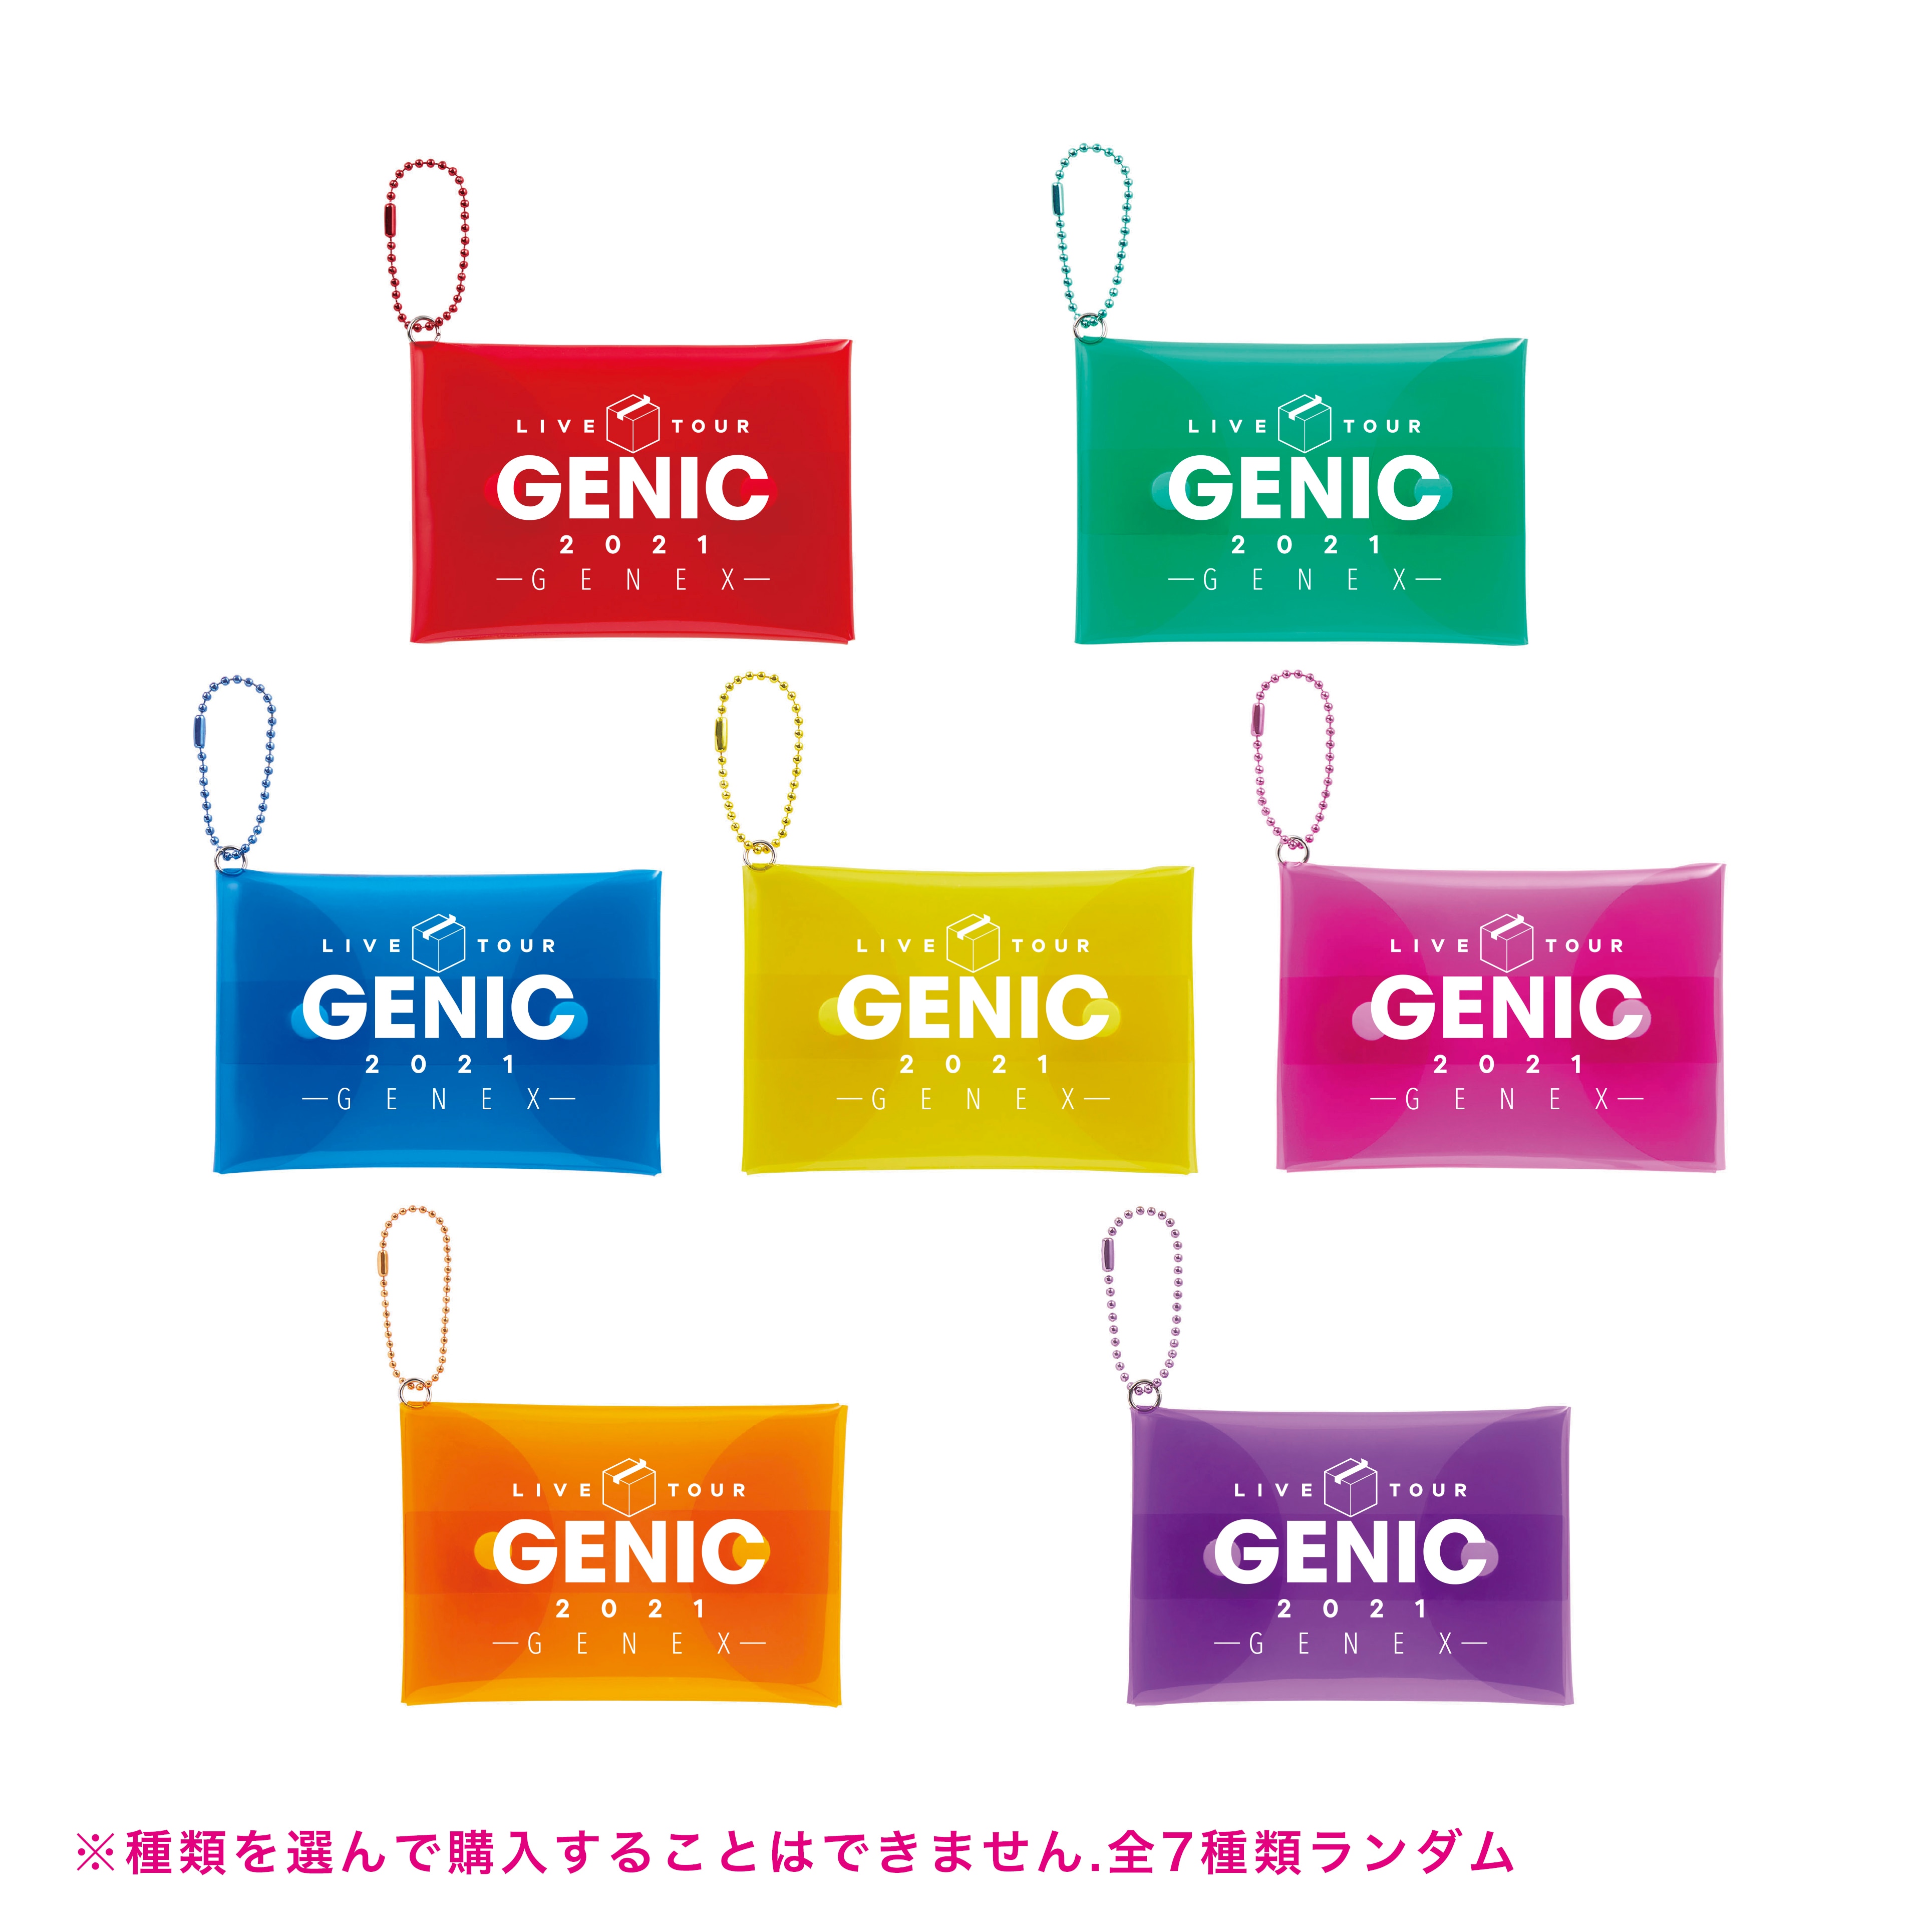 グッズ情報】GENIC LIVE TOUR 2021 -GENEX- ラインナップ解禁